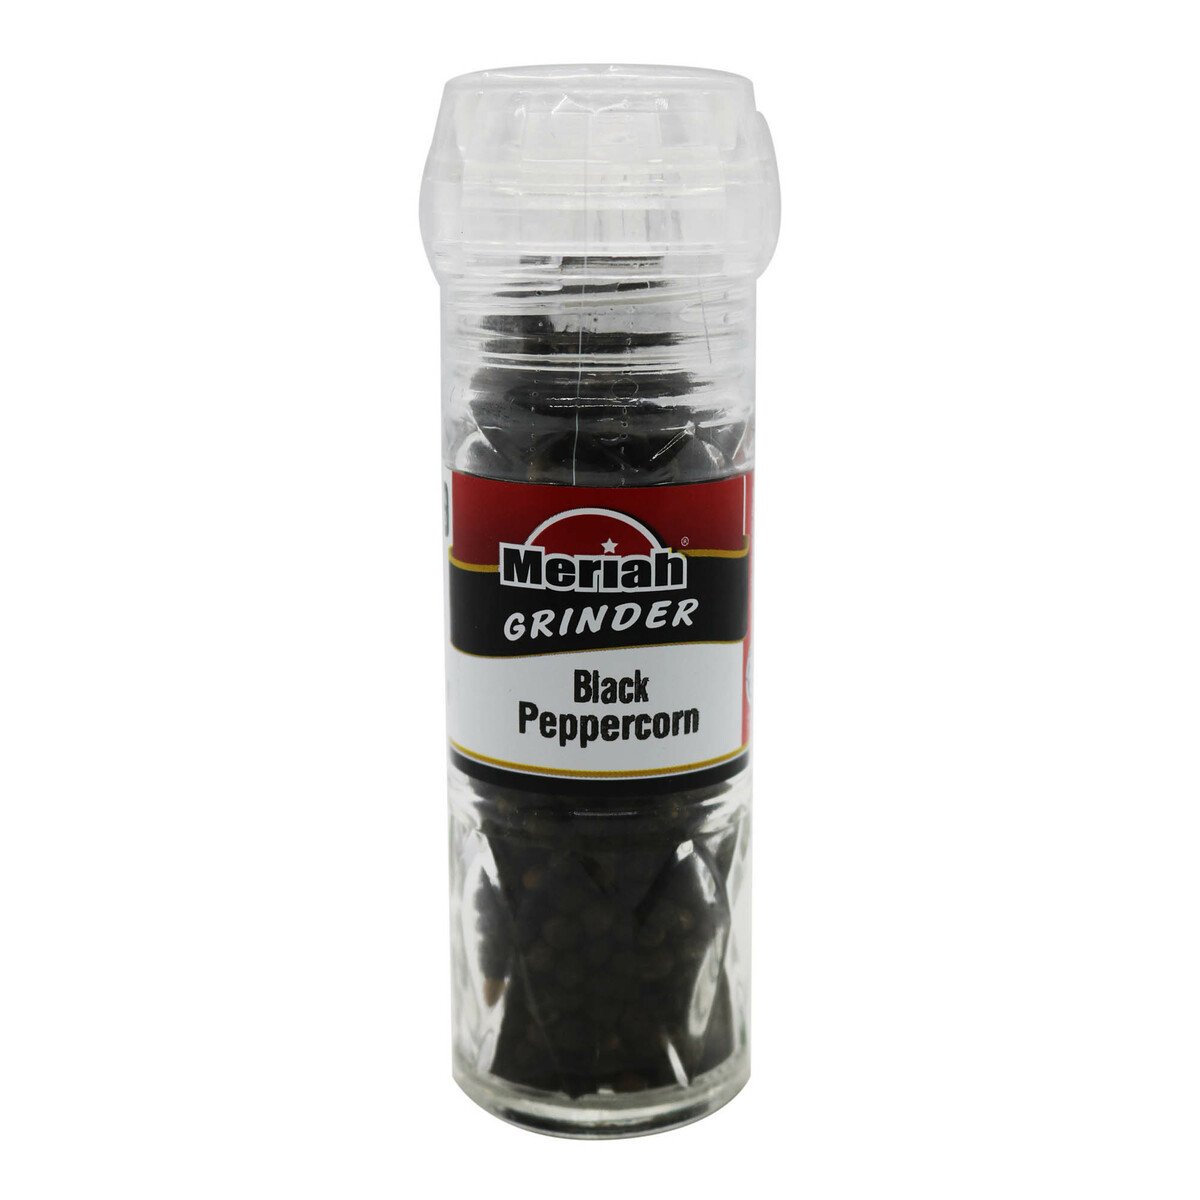 Meriah Black Pepperocrn Grinder 55g